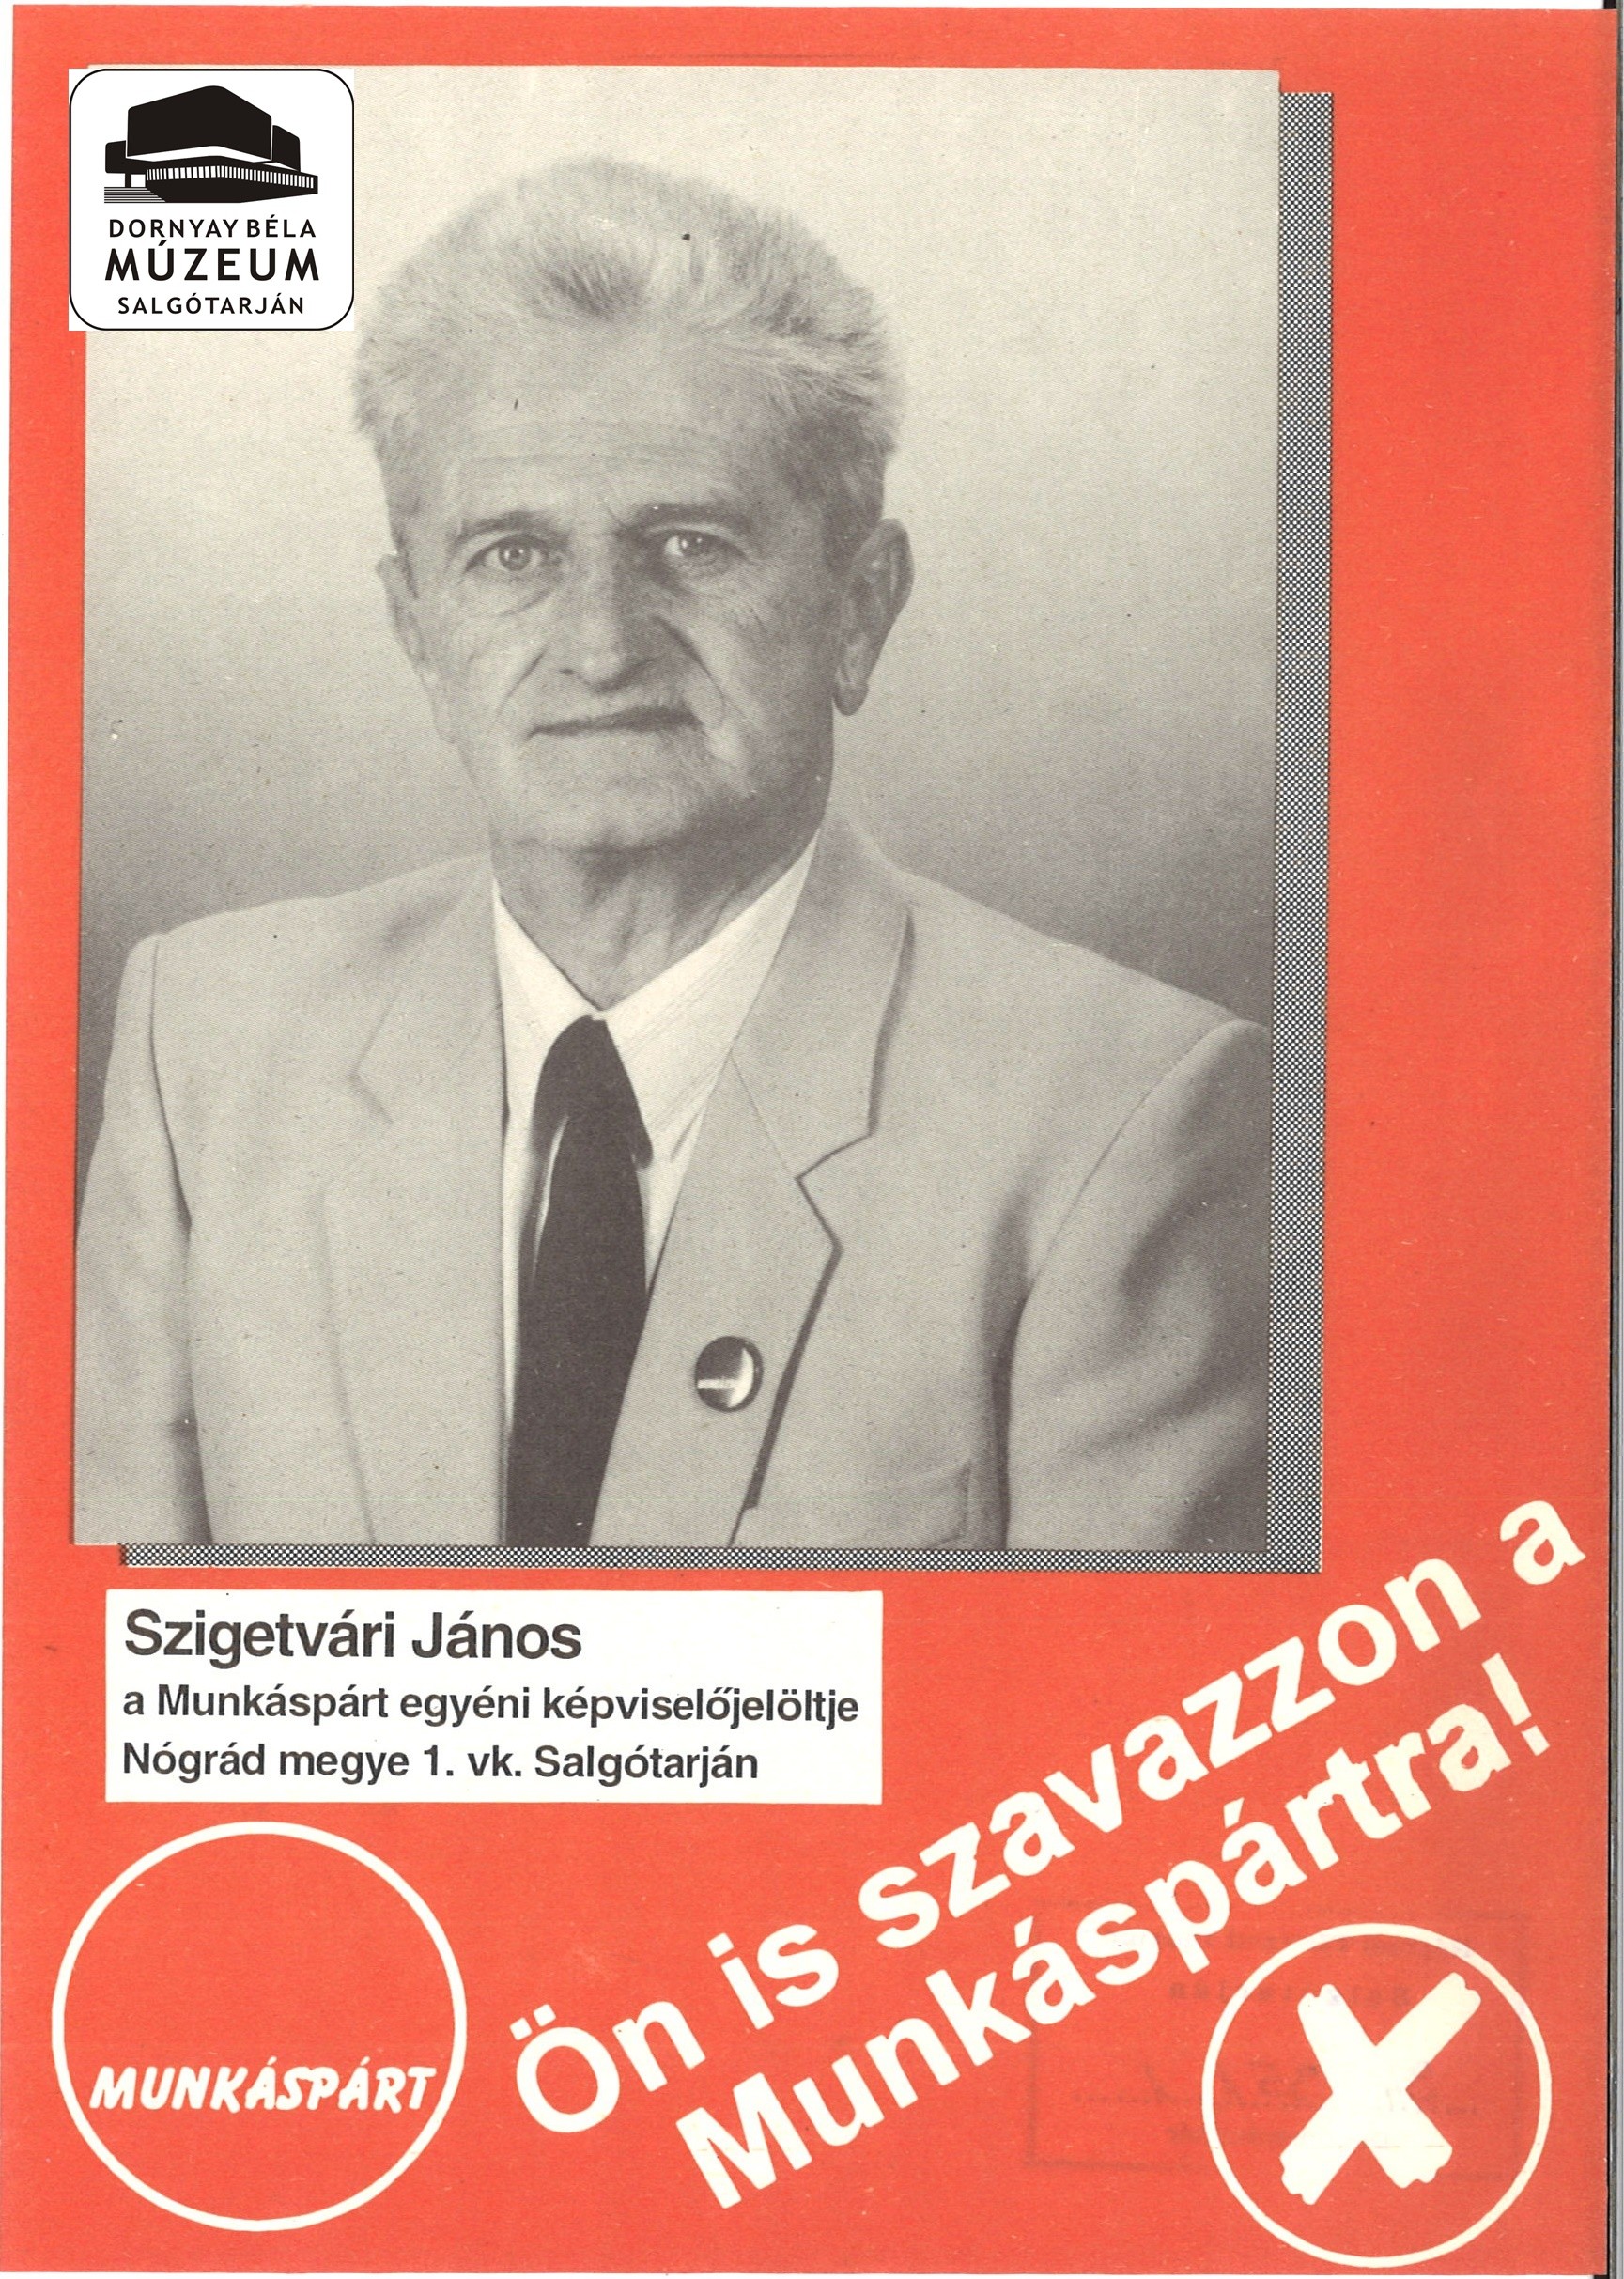 Szigetvári János a Munkáspárt képviselőjelöltje Nógrád megye 1. vk-ben (Dornyay Béla Múzeum, Salgótarján CC BY-NC-SA)